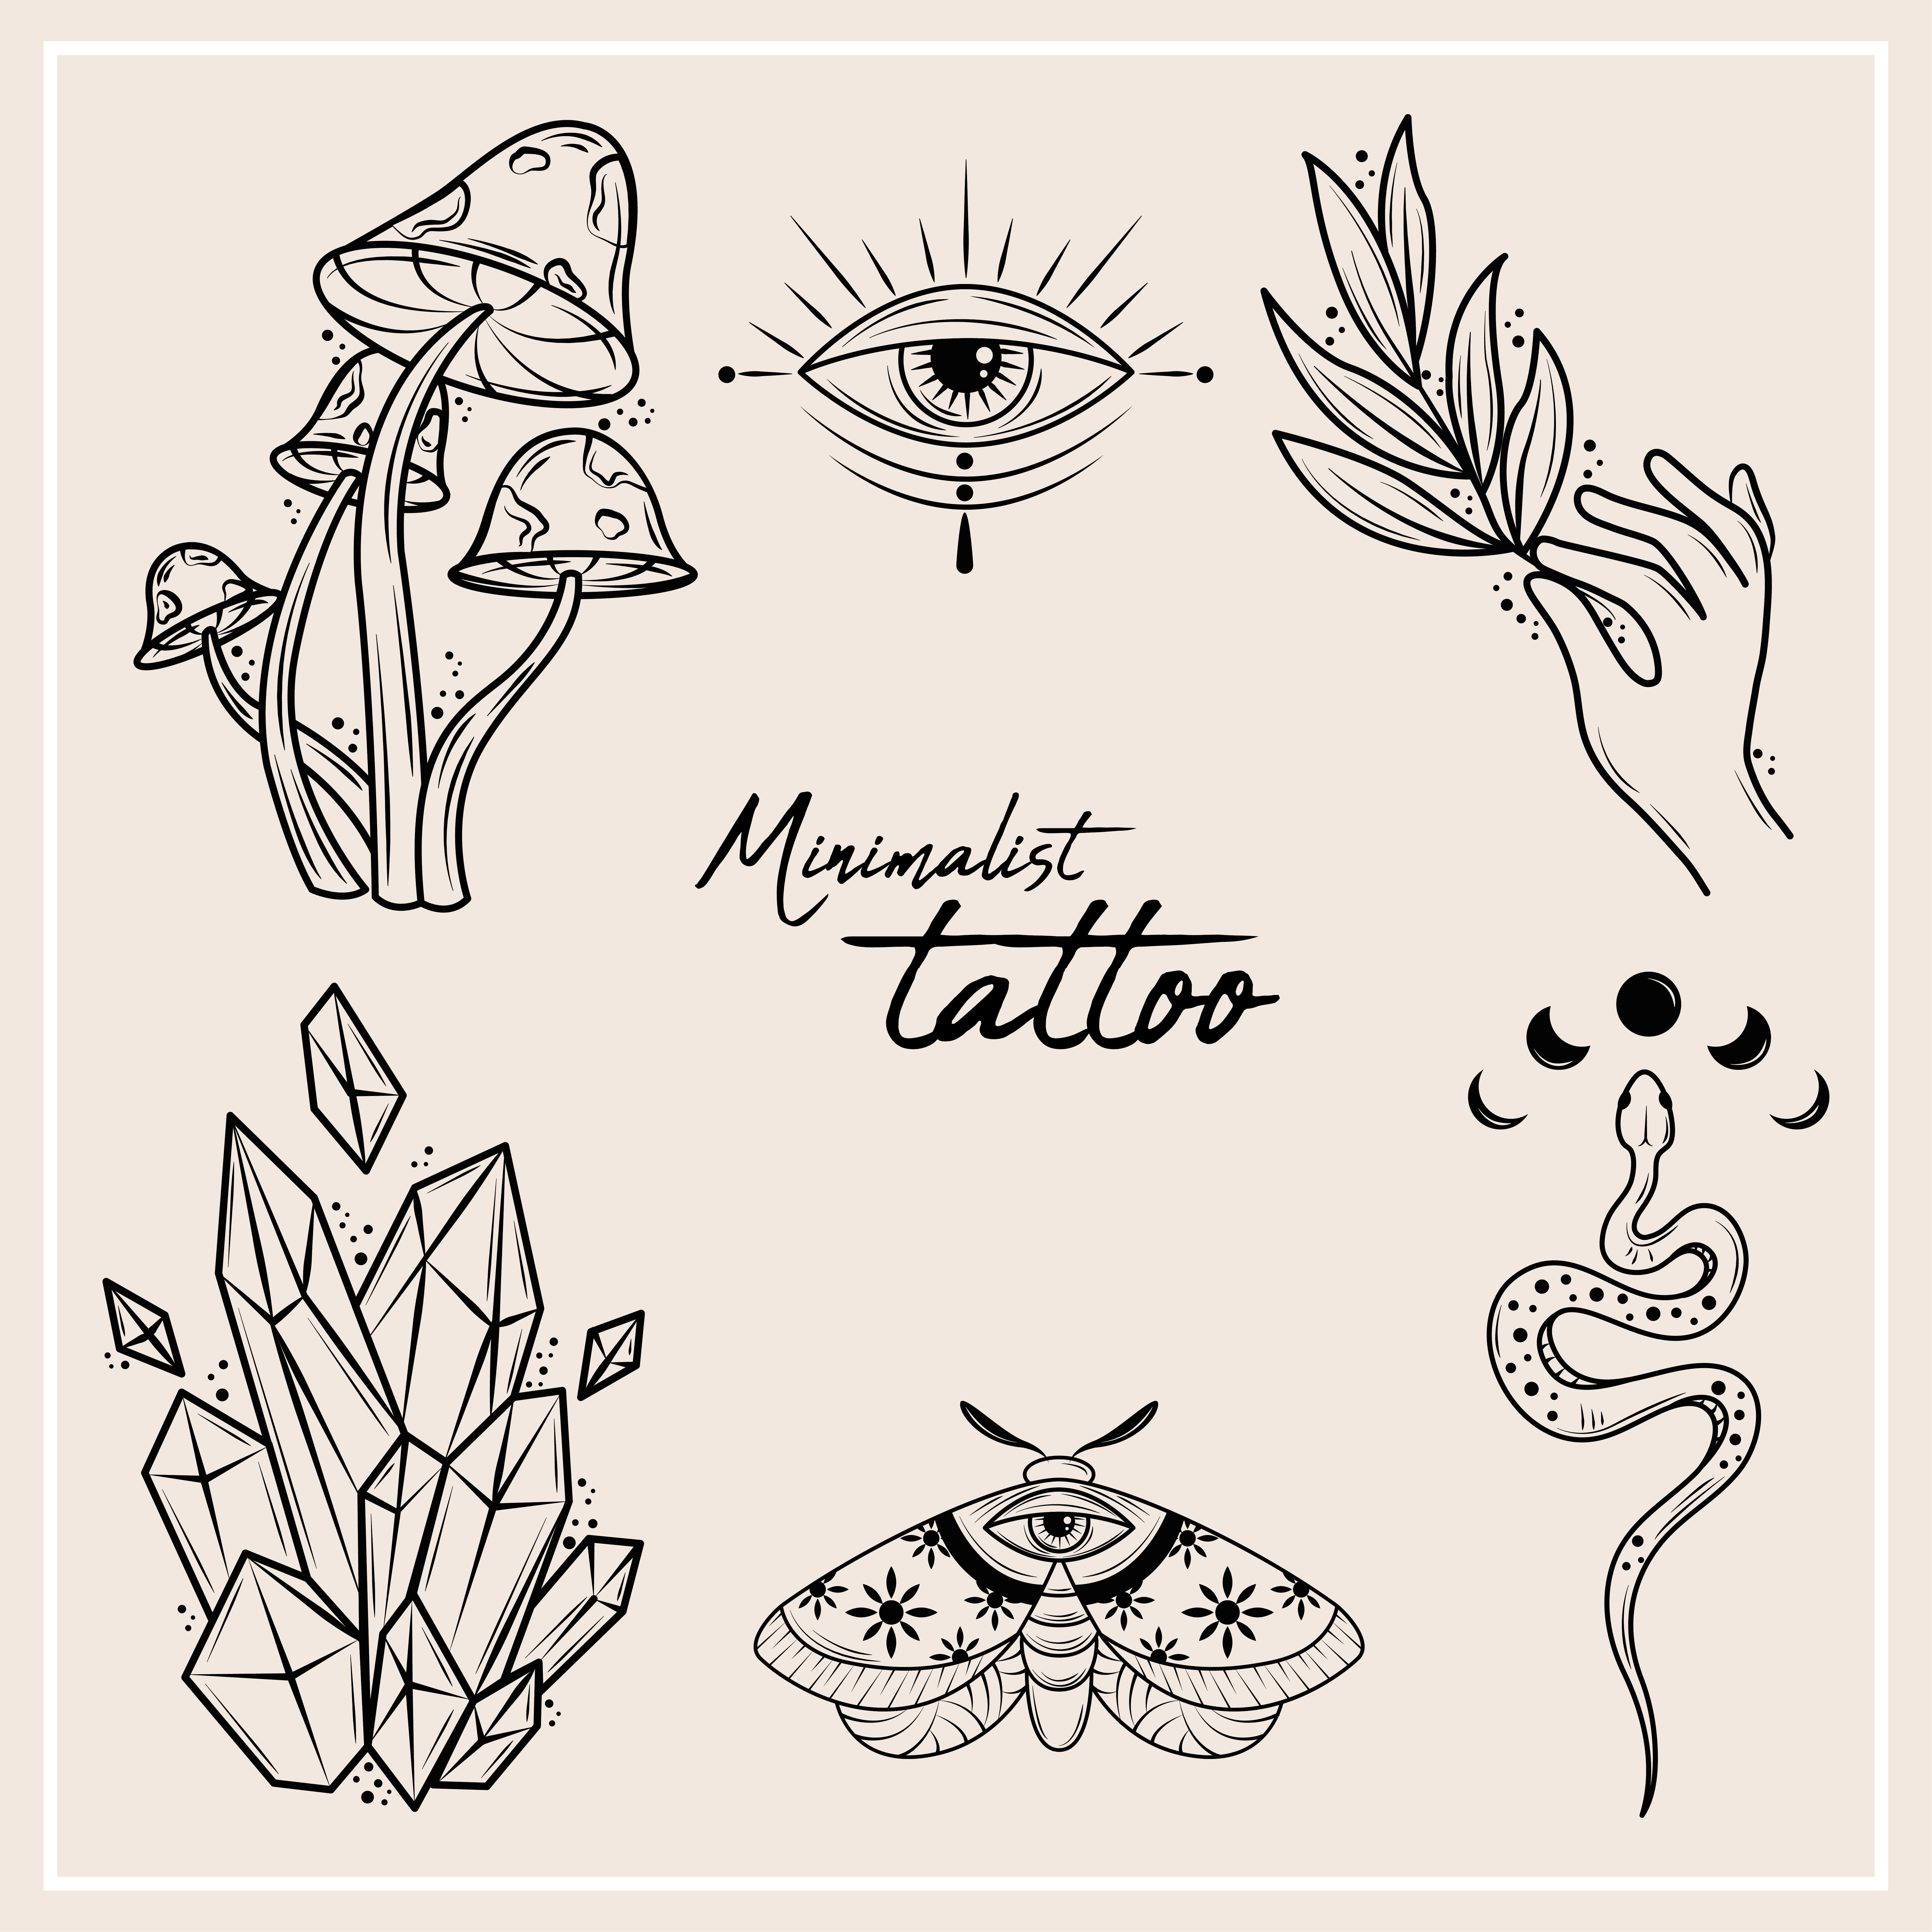 tatuajesminimalistas - Explore